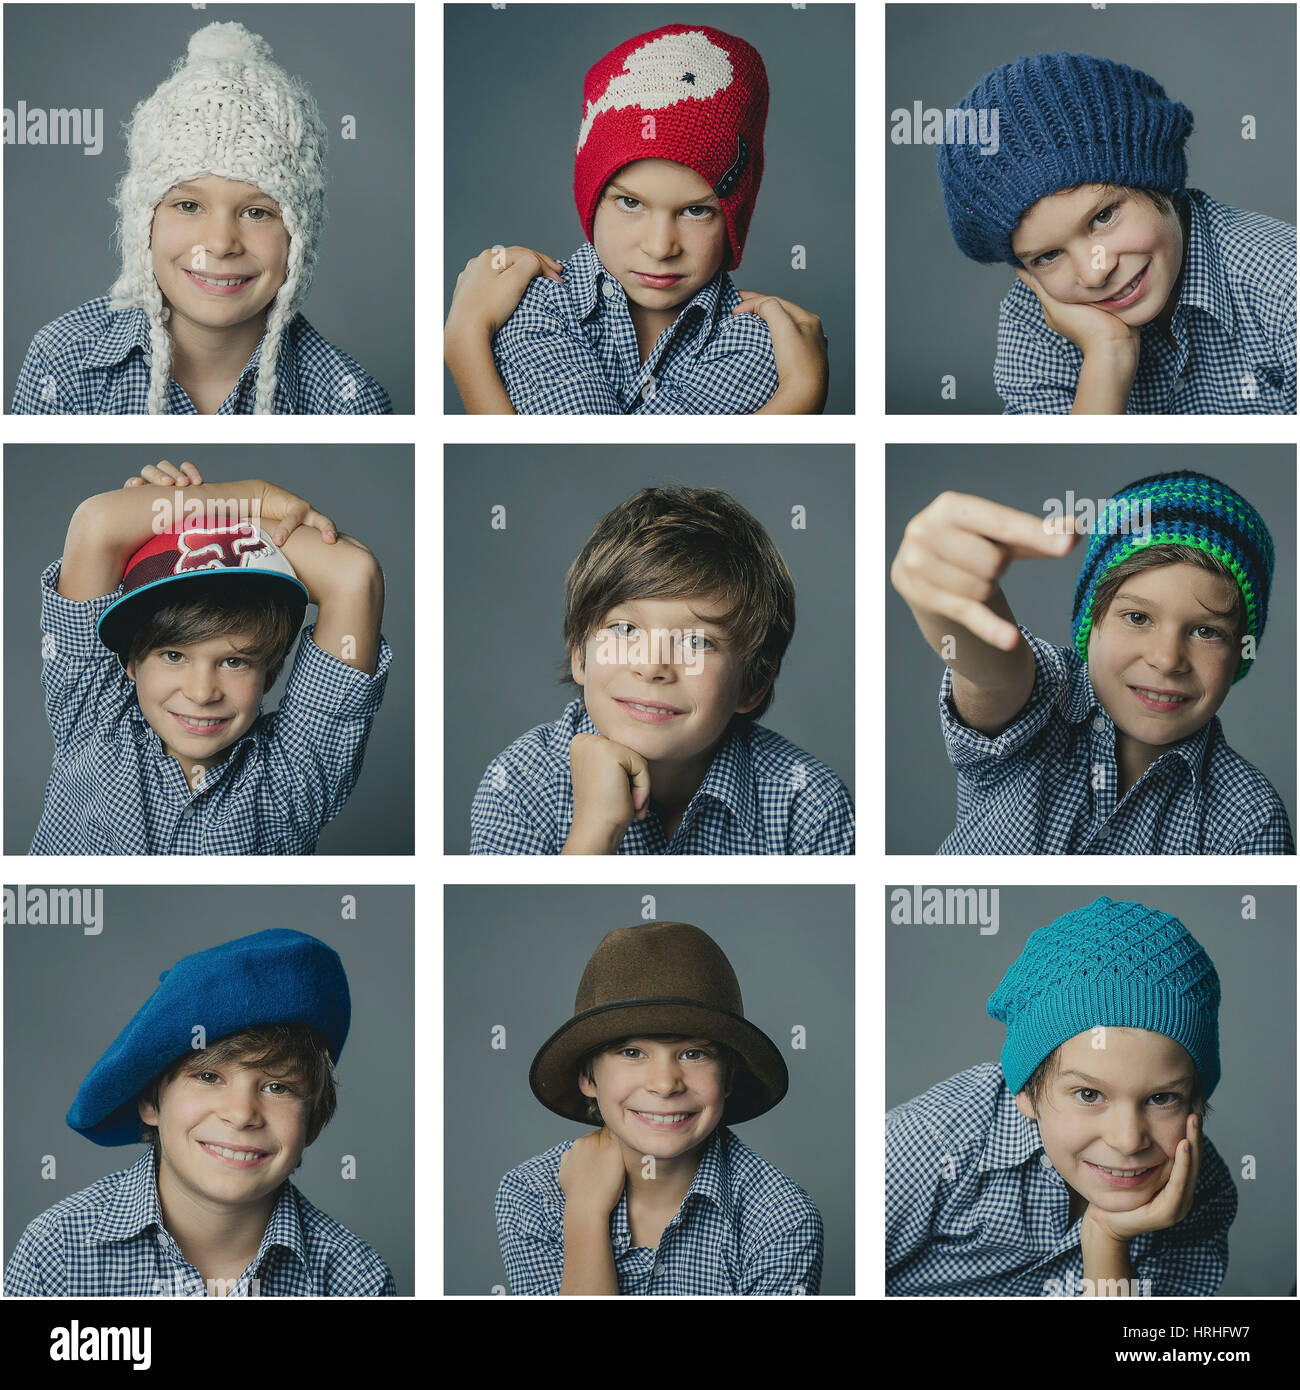 Fotokollage, Junge mit verschiedenen Kopfbedeckungen - photo collage, boy with different headpieces Stock Photo